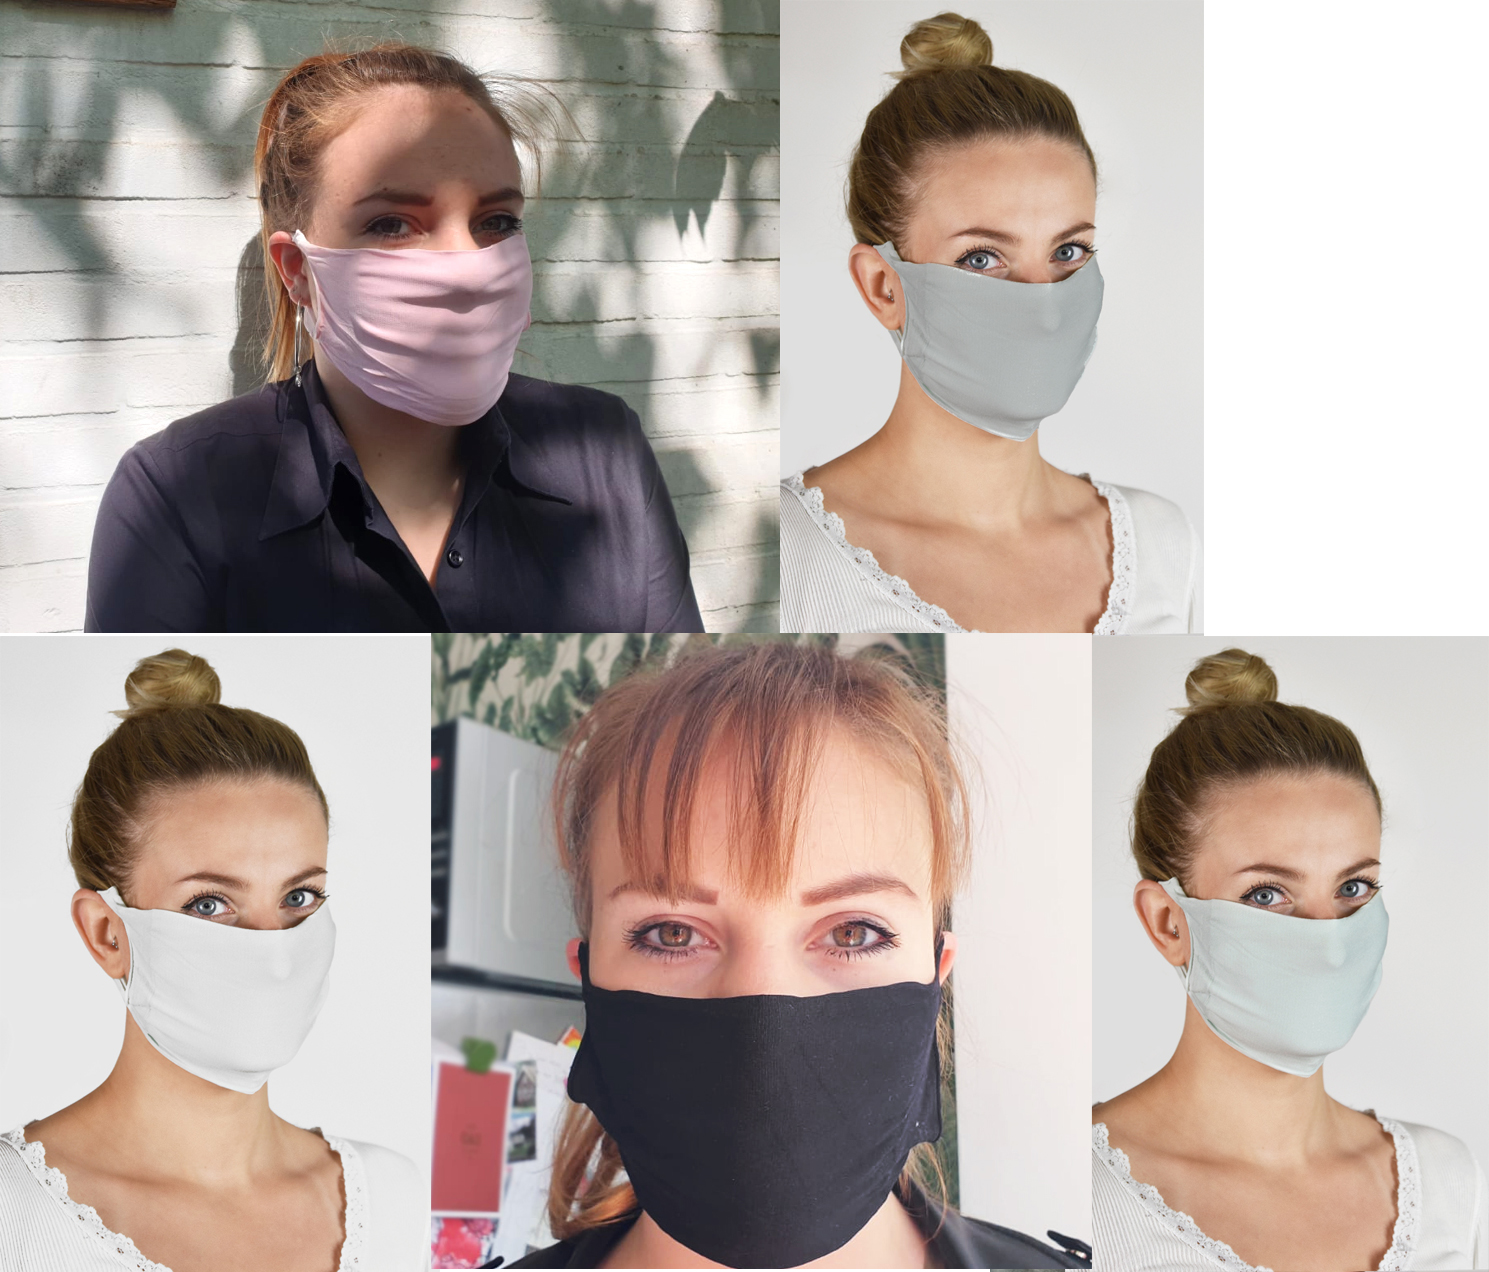 Herbruikbare wasbare mondmasker mondkapje 10 stuks alle kleuren NIET MEDISCH met Oeko-Tex standard 100 label